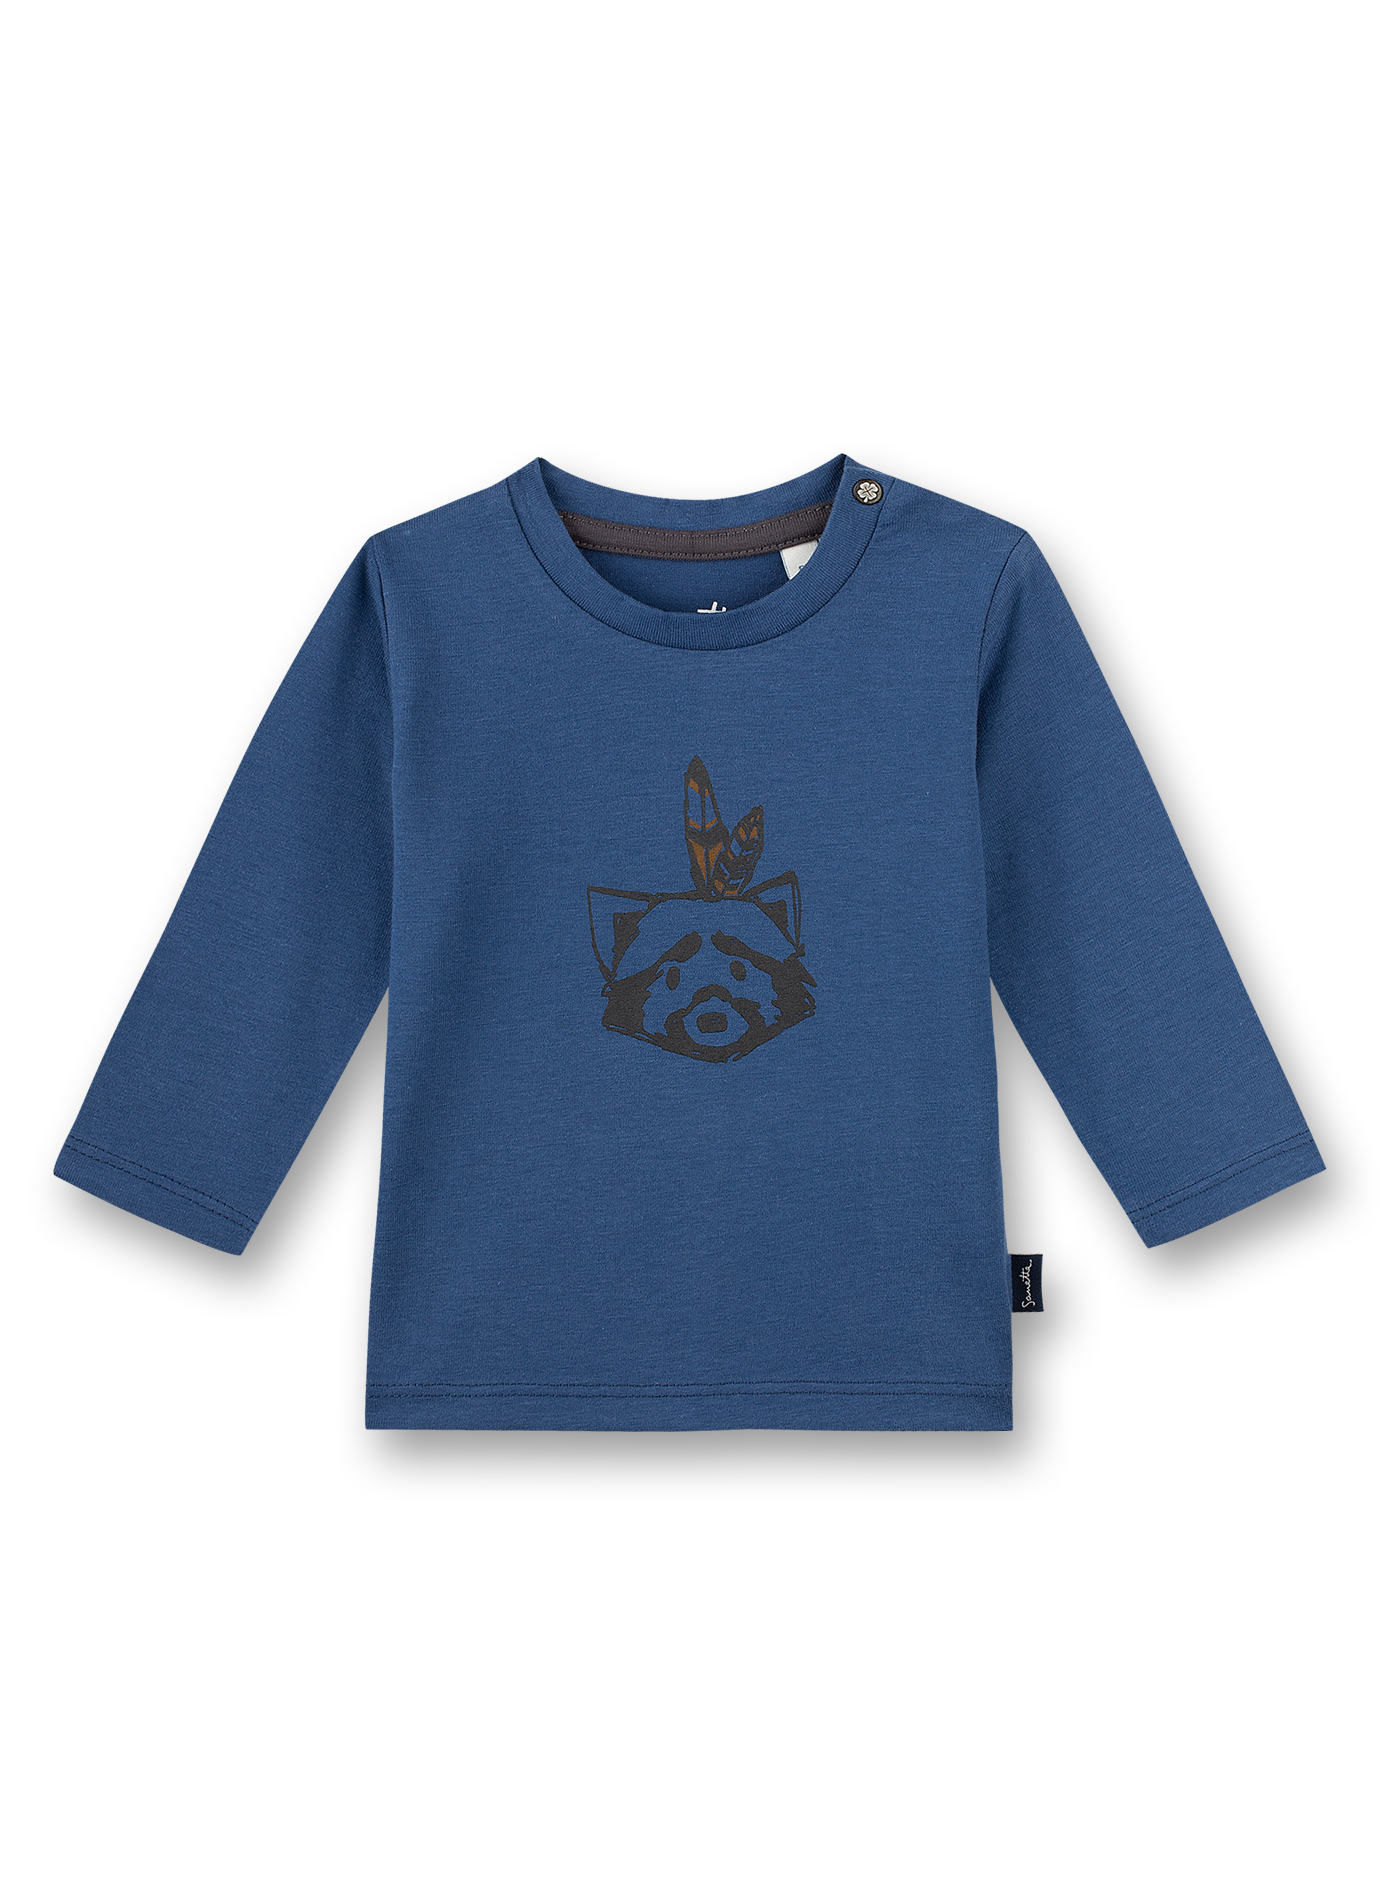 Jungen-Shirt langarm Blau Indian Little Panda